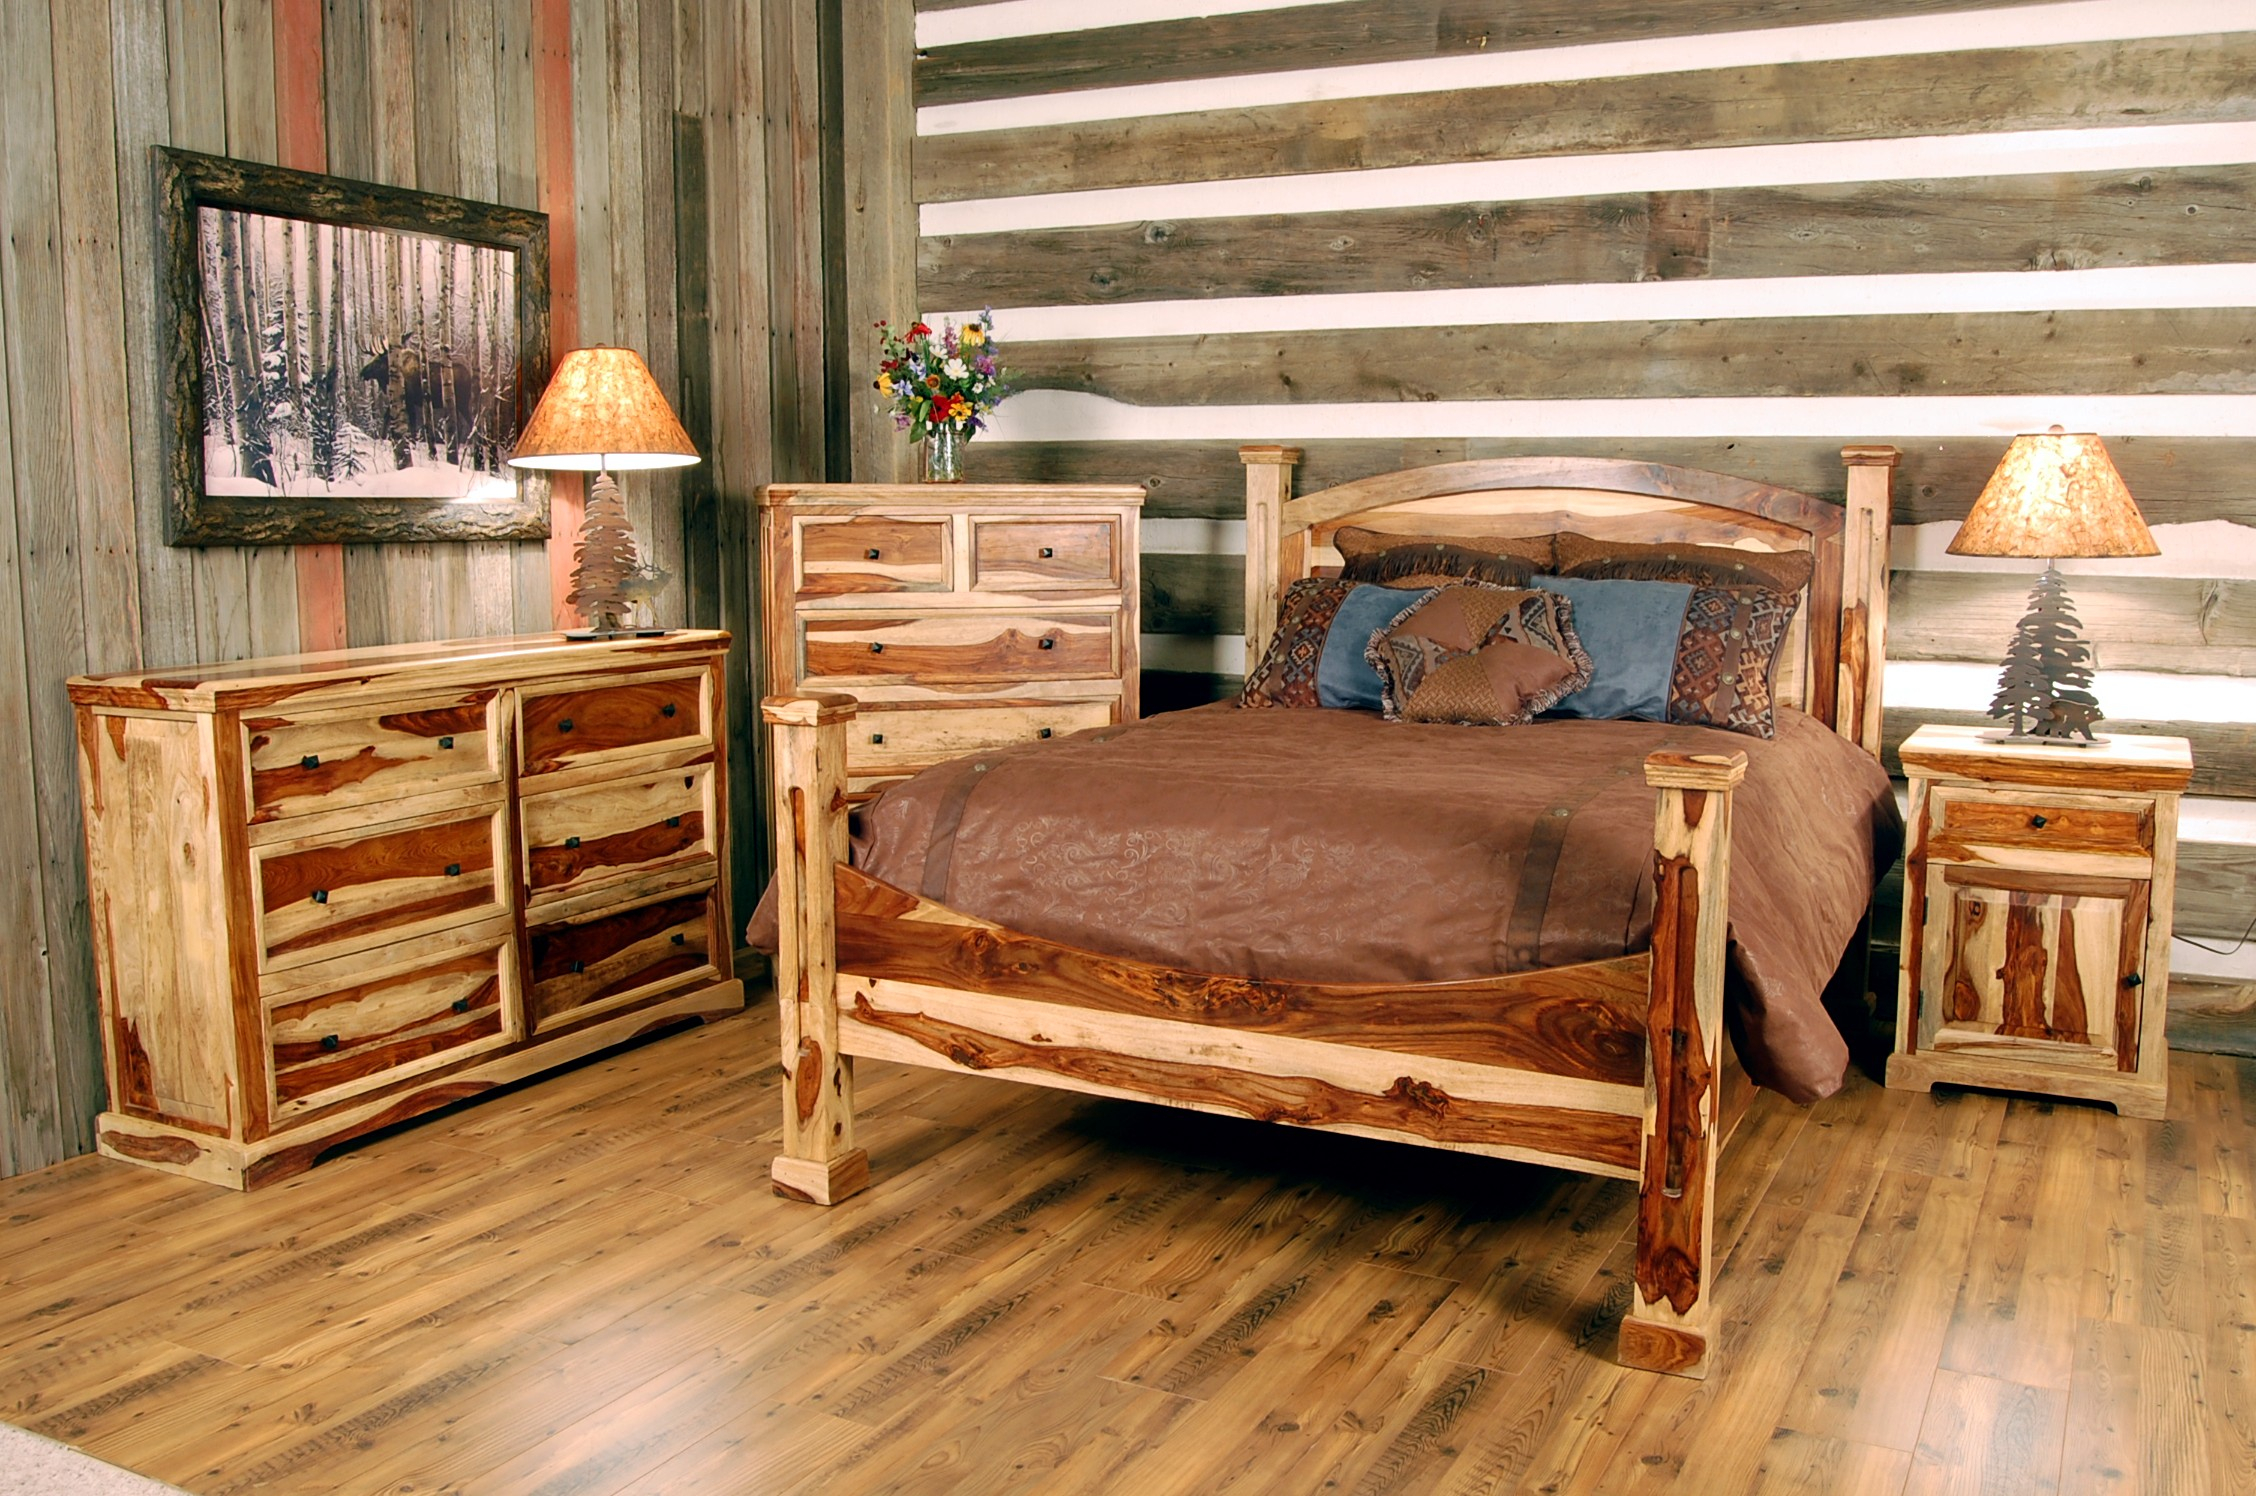 Likable Cabin Creek Bedroom Furniture Mansion Storage Sets Set Moss inside dimensions 2256 X 1496